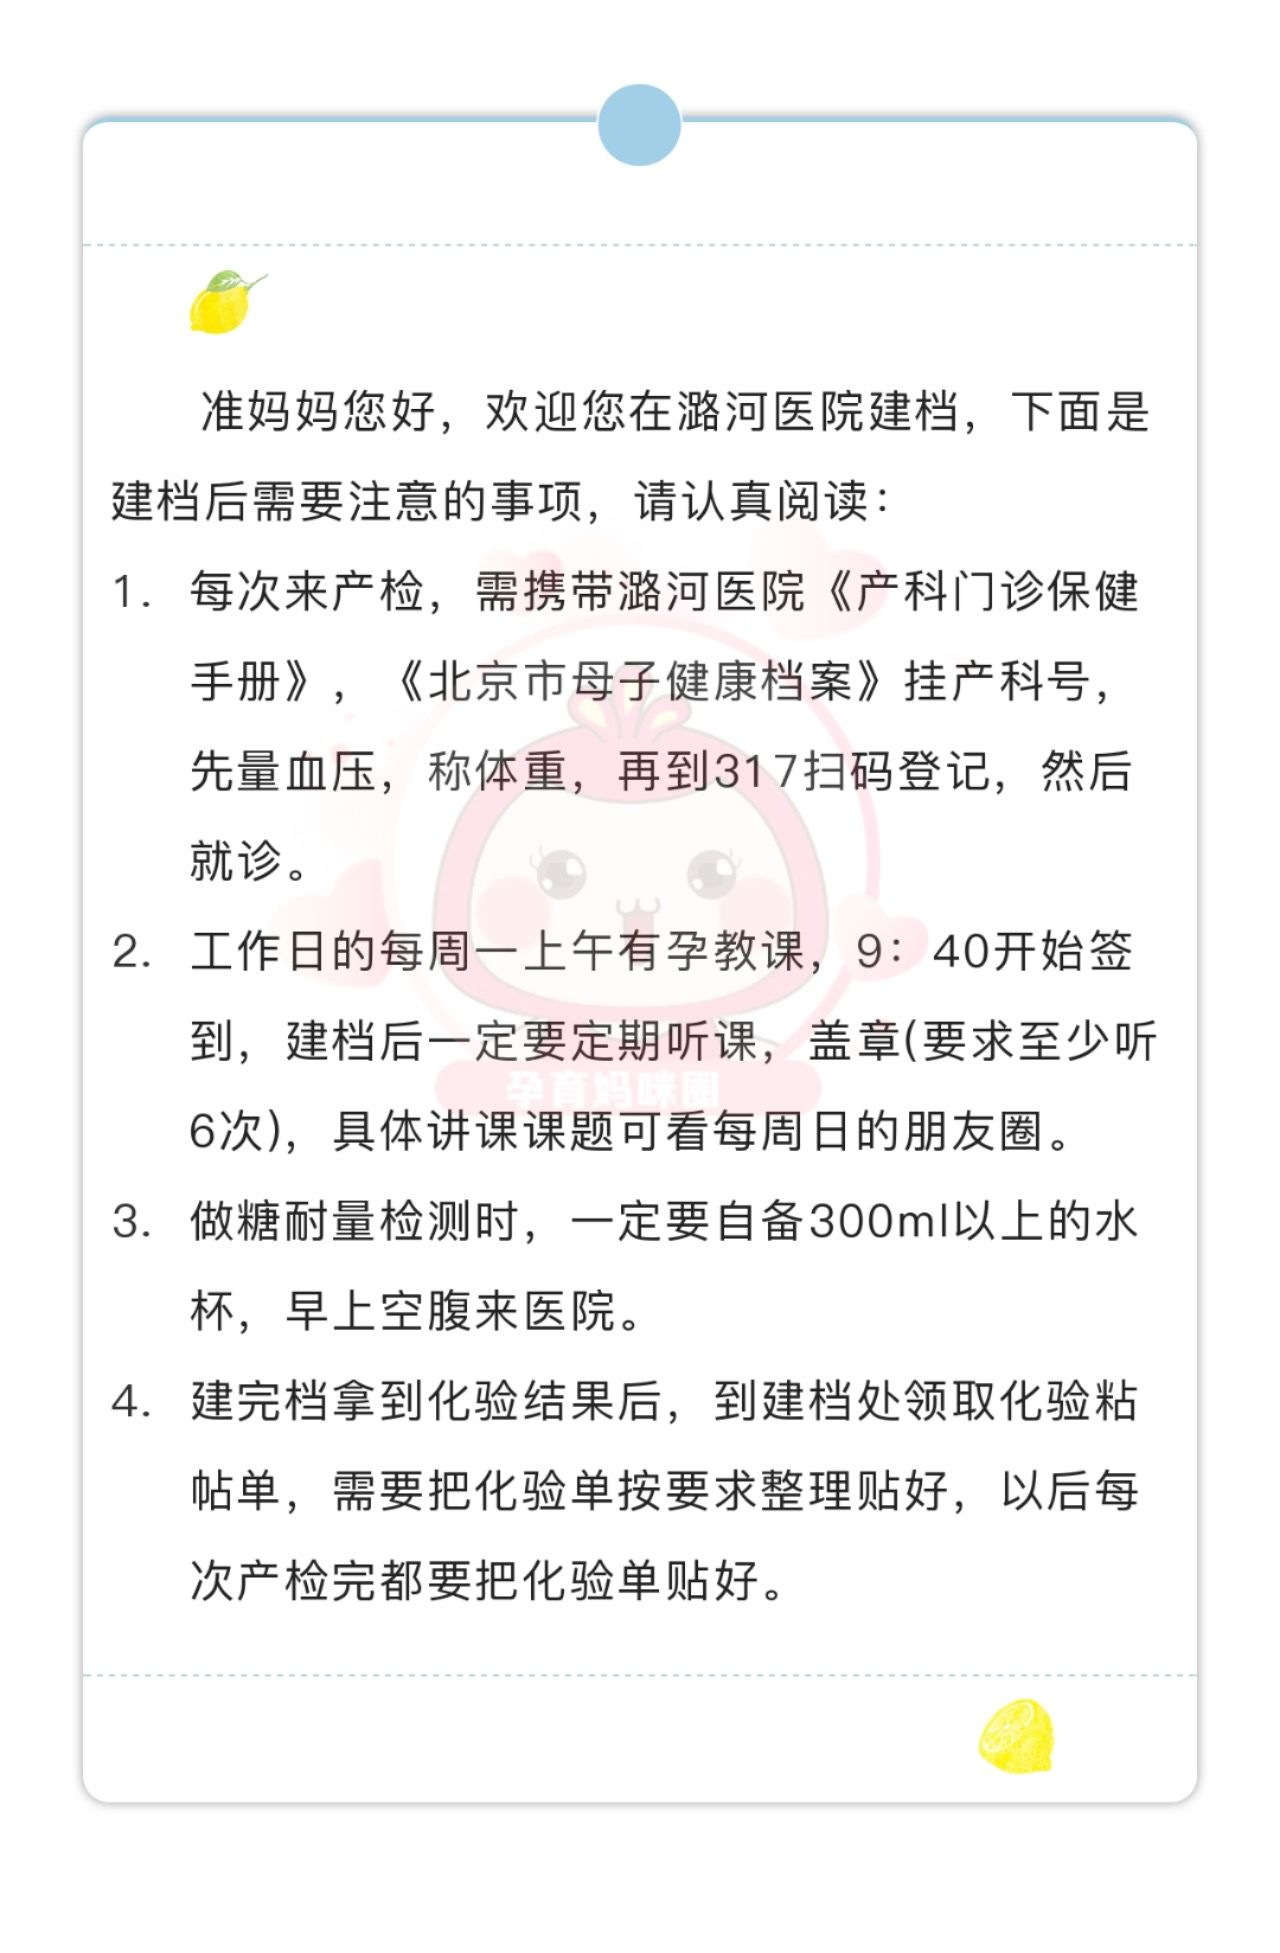 包含北京潞河医院号贩子电话,圈子口碑最好100%有号!的词条